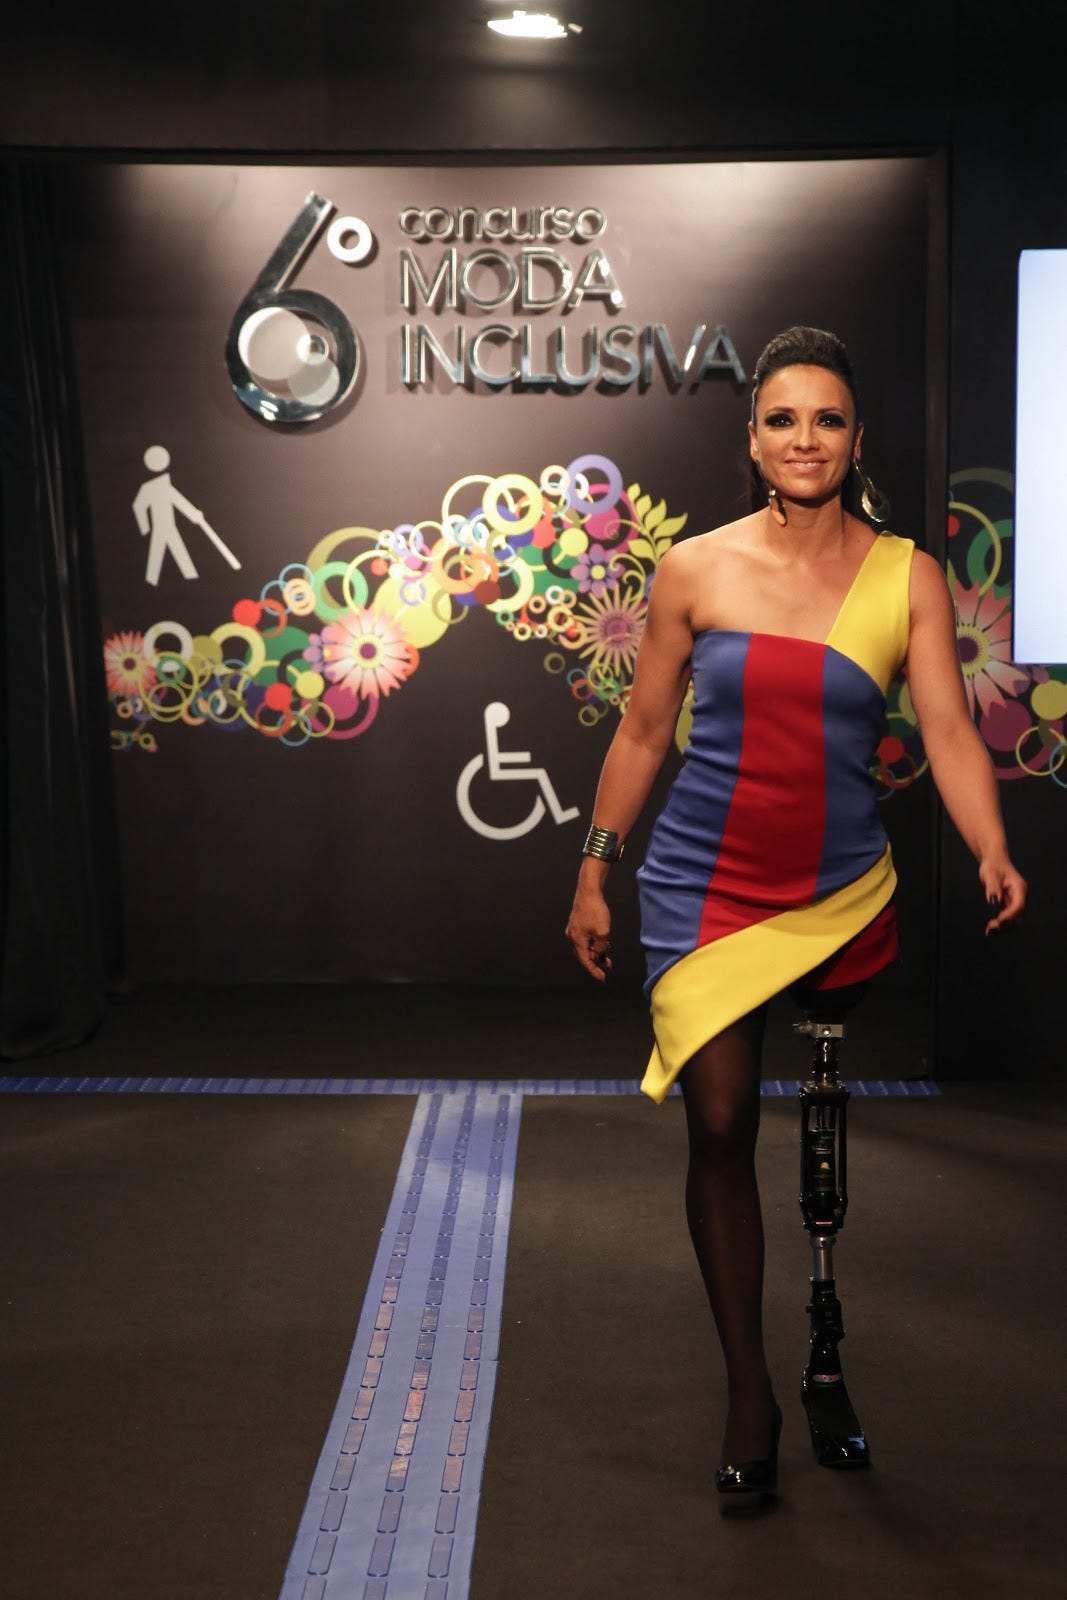 Moda inclusiva: marcas brasileiras de roupas adaptadas para pcd